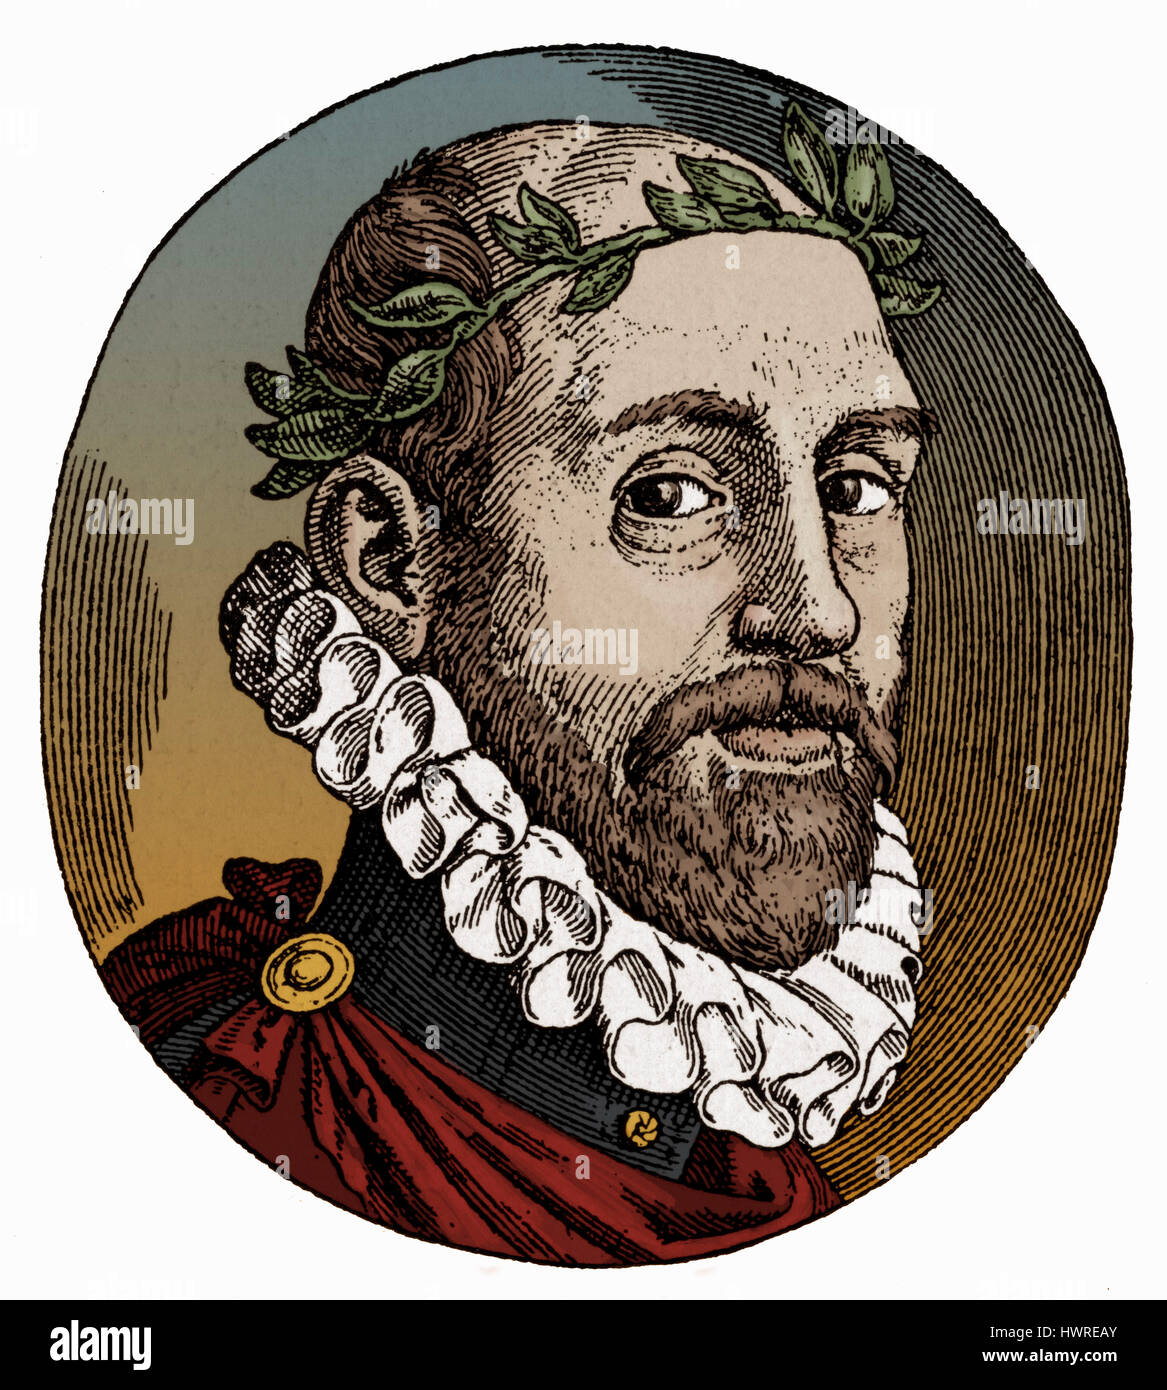 Torquato Tasso - Porträt des italienischen Dichters veröffentlicht in Rom, 1593-Ausgabe seines Gedichtes "La Gerusalemme Liberata" (Jerusalem geliefert). 11 März 1544-25 April 1595 Stockfoto